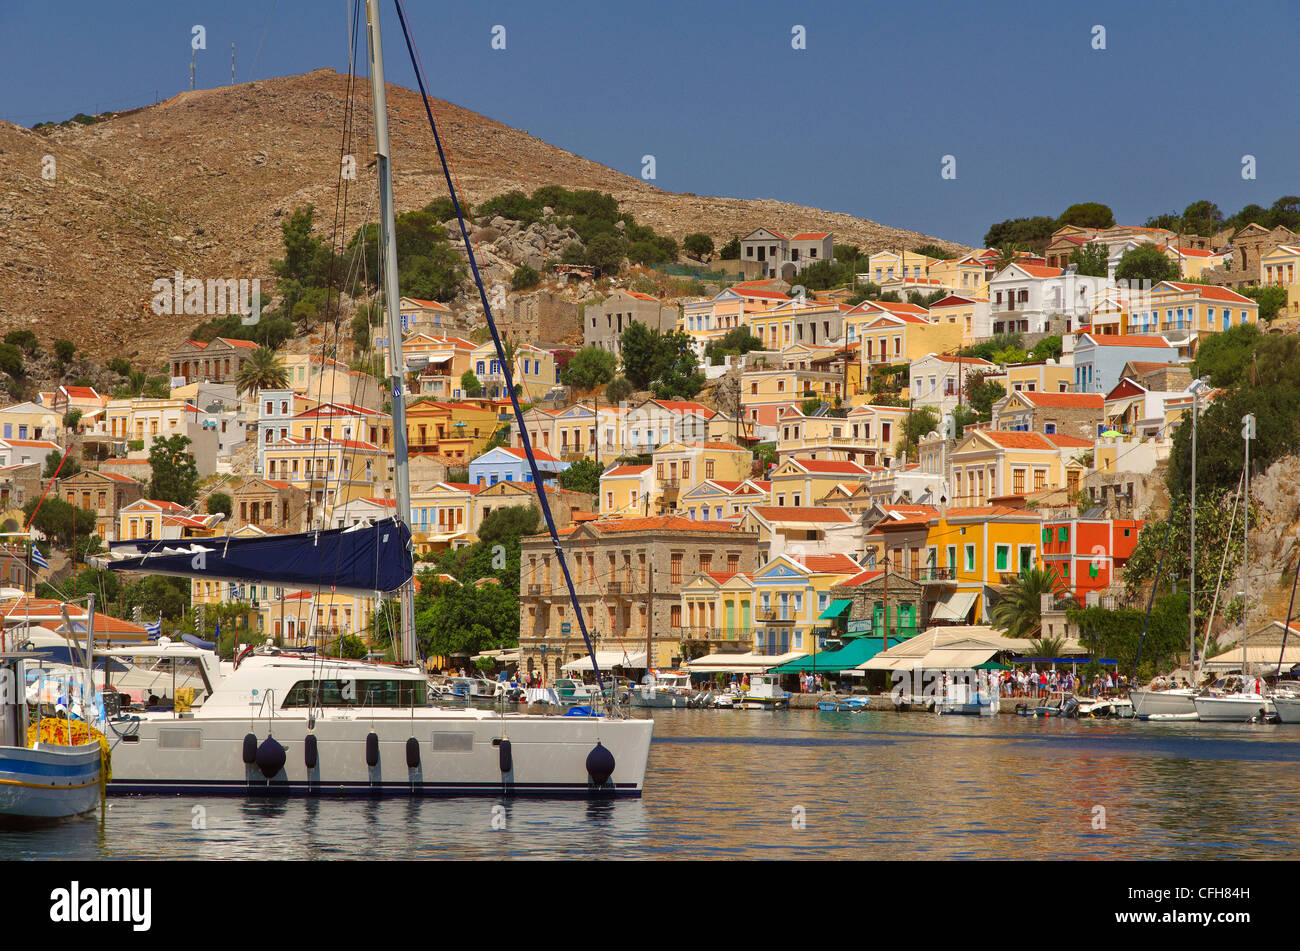 Hafen von Symi, griechischen Insel Symi, Ägäis Dodekanes Inselgruppe, Griechenland Stockfoto